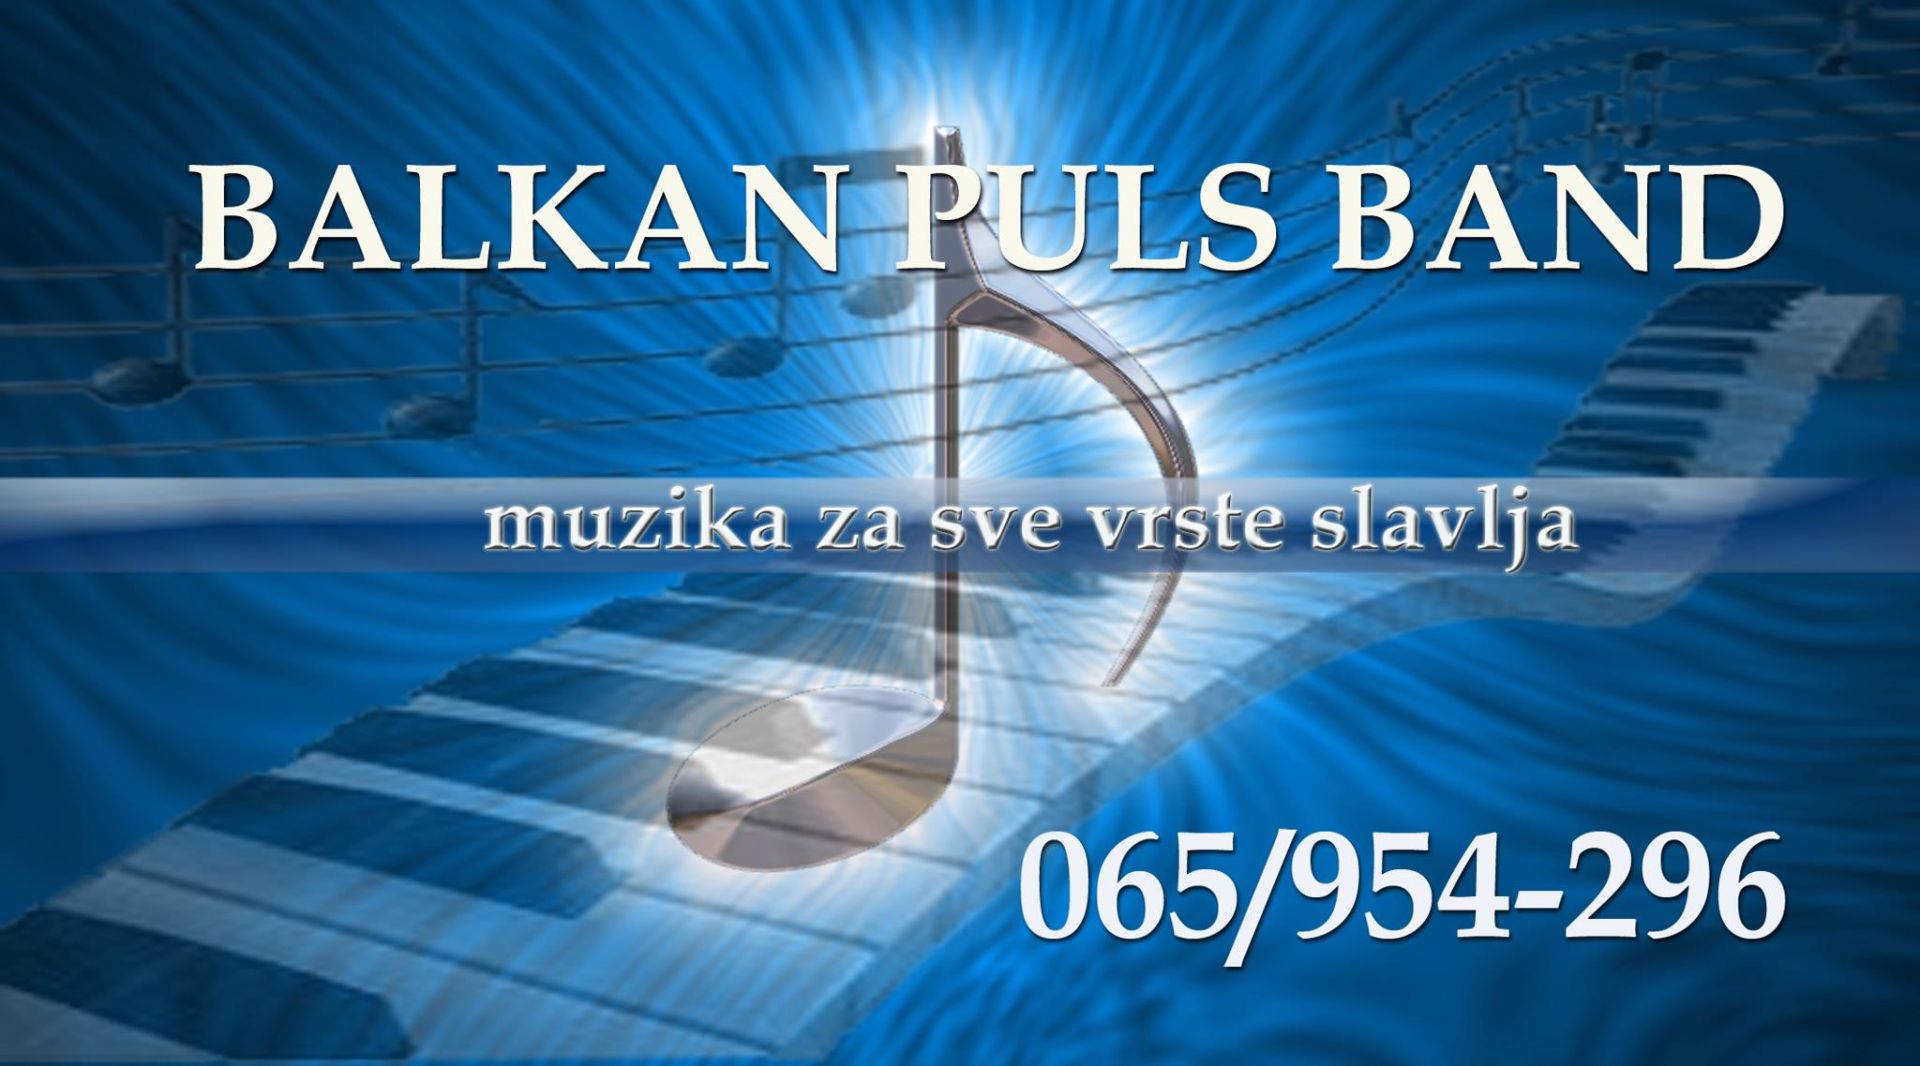 Balkan Puls band